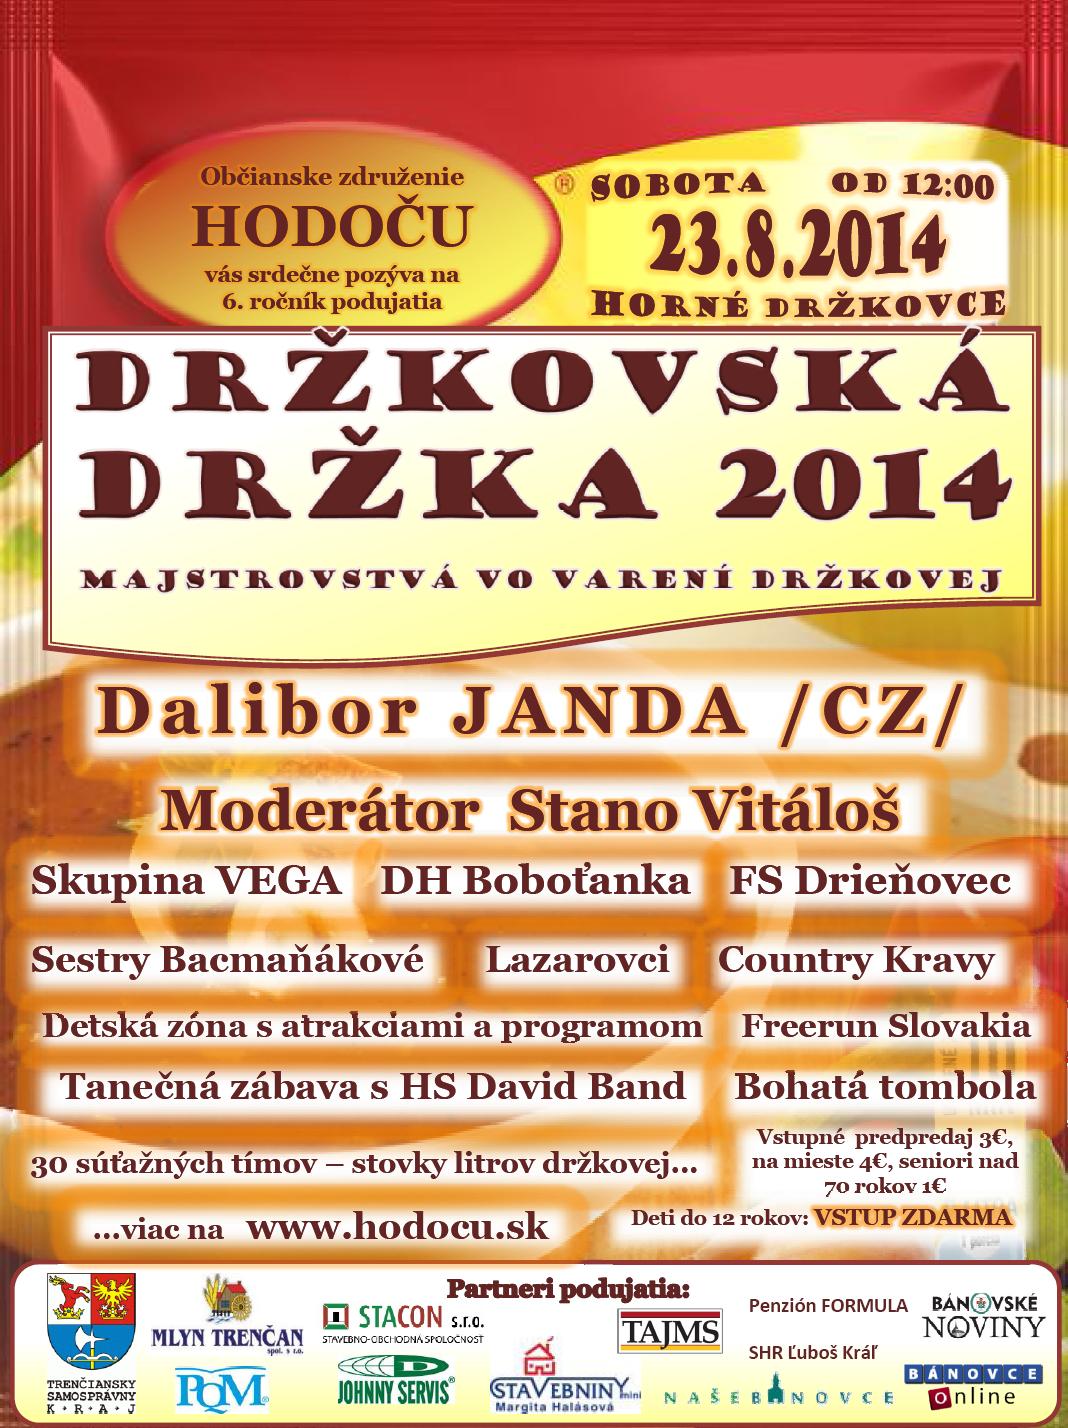 Držkovská držka 2014 Veľké Držkovce - 6. ročník